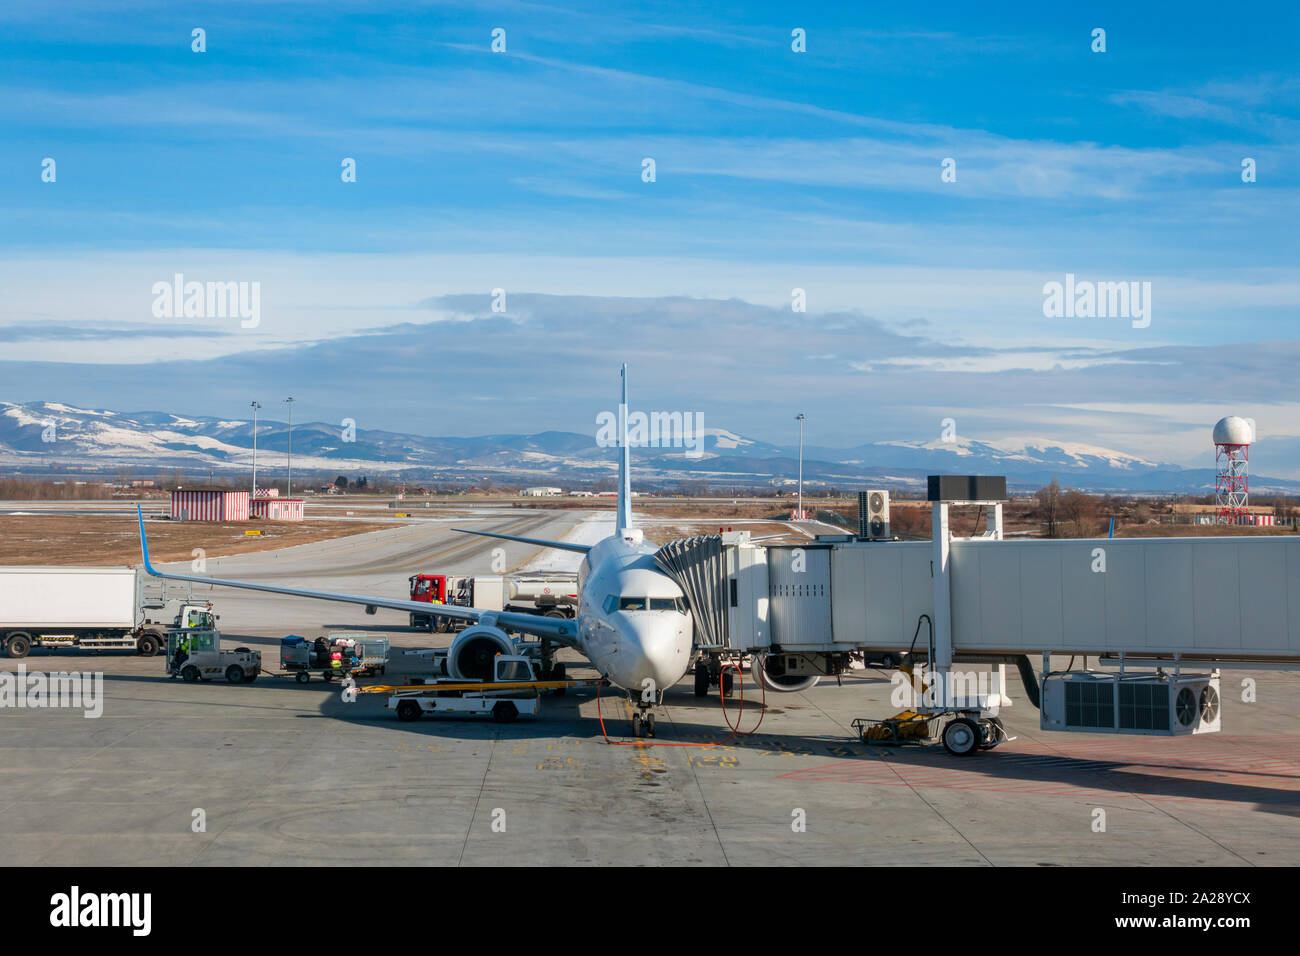 Flugzeug, Jet Airliner Betankung mit Gehweg befestigt und Gepäck auf der Landebahn Schürze am Flughafen Sofia, Bulgarien, Europa hochgeladen werden im Winter Stockfoto